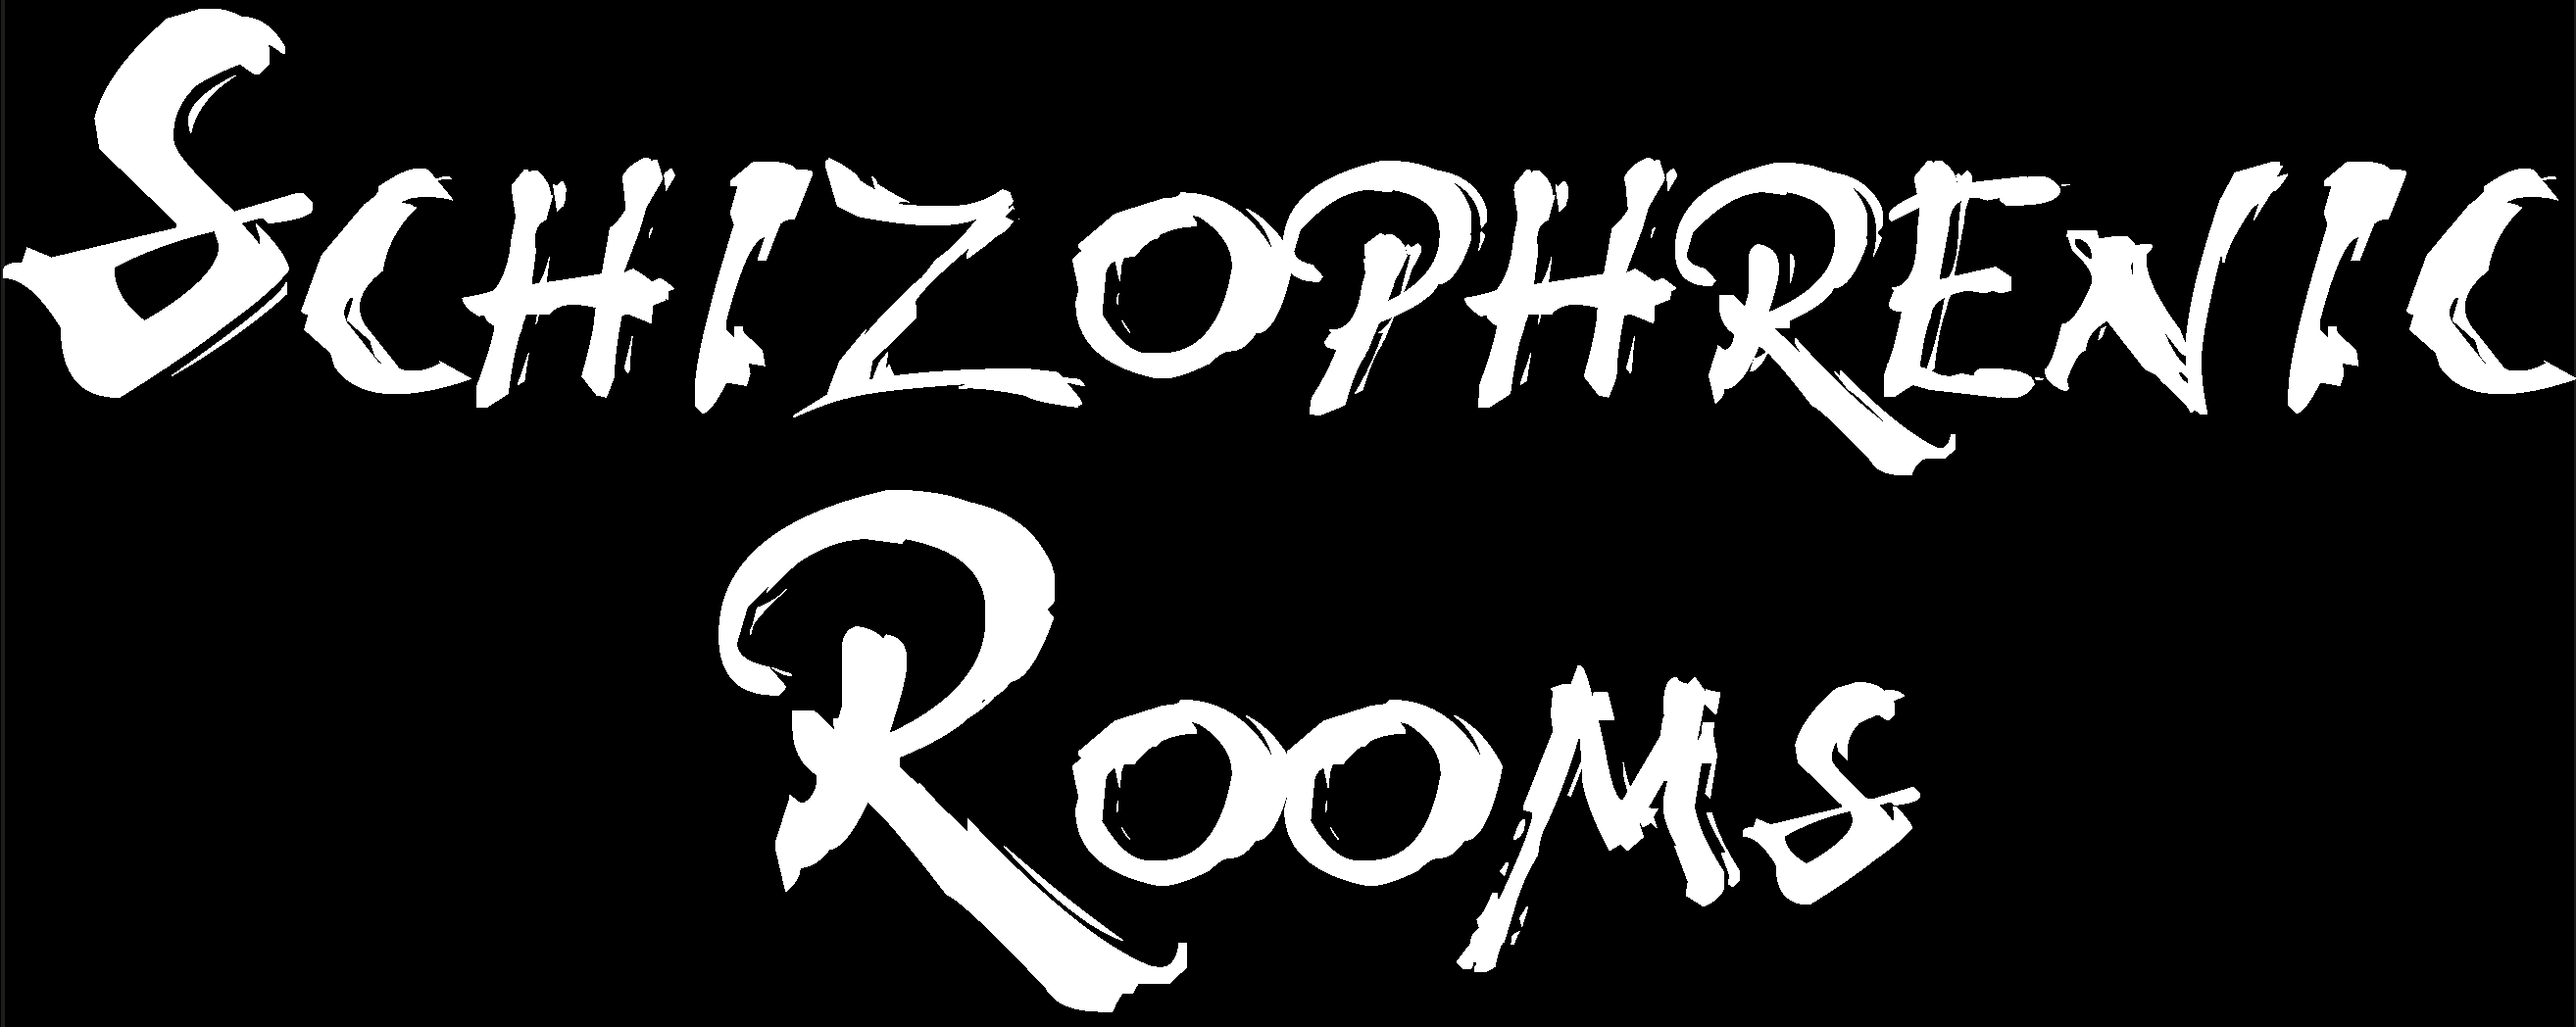 Schizophrenic Rooms